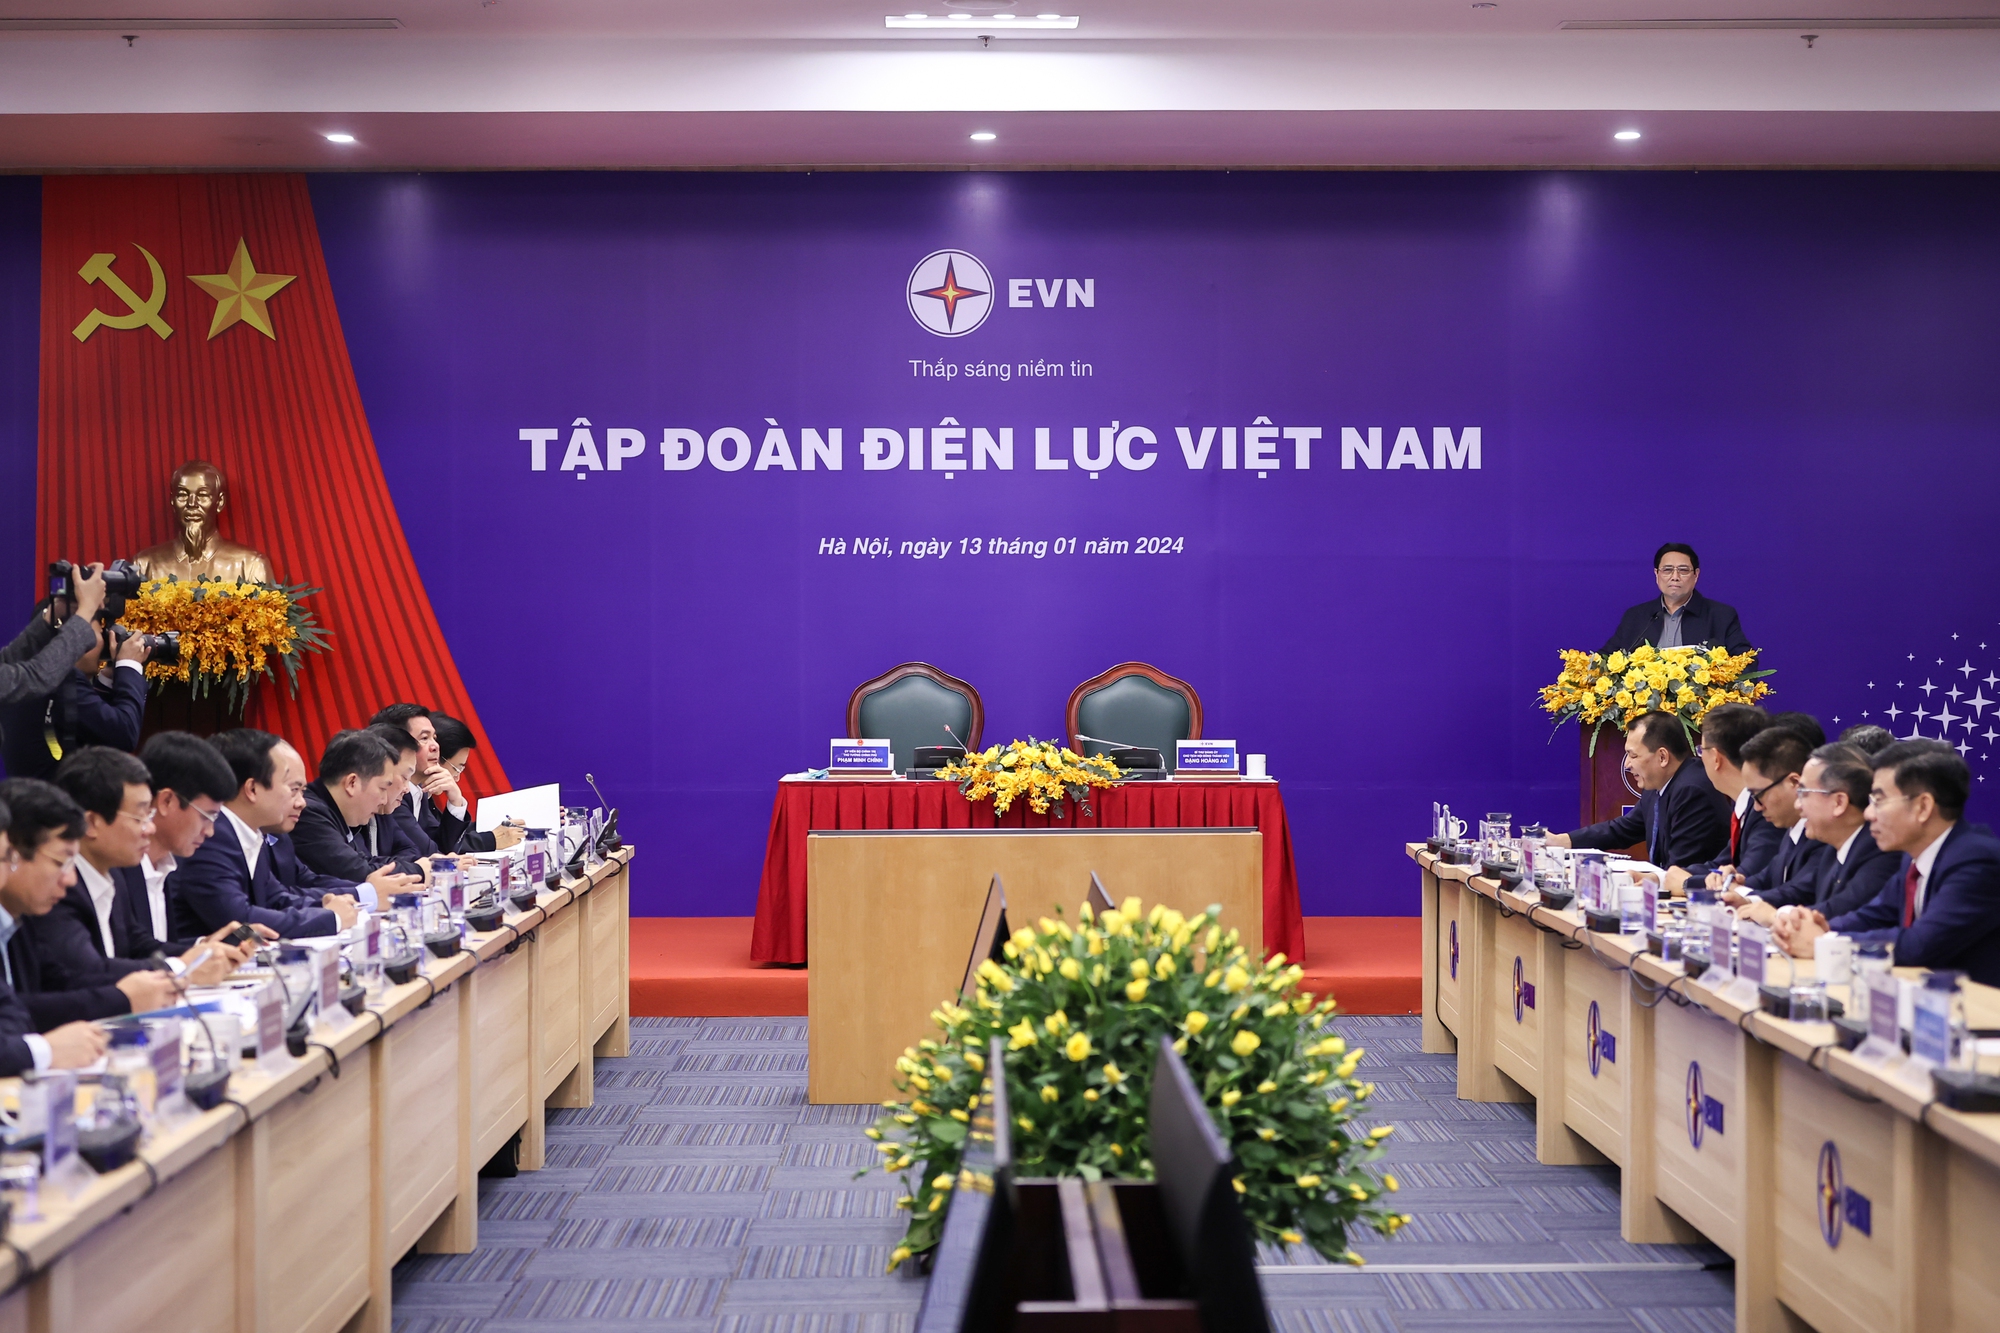 Toàn cảnh buổi làm việc của Thủ tướng Phạm Minh Chính với Tập đoàn Điện lực Việt Nam (EVN)